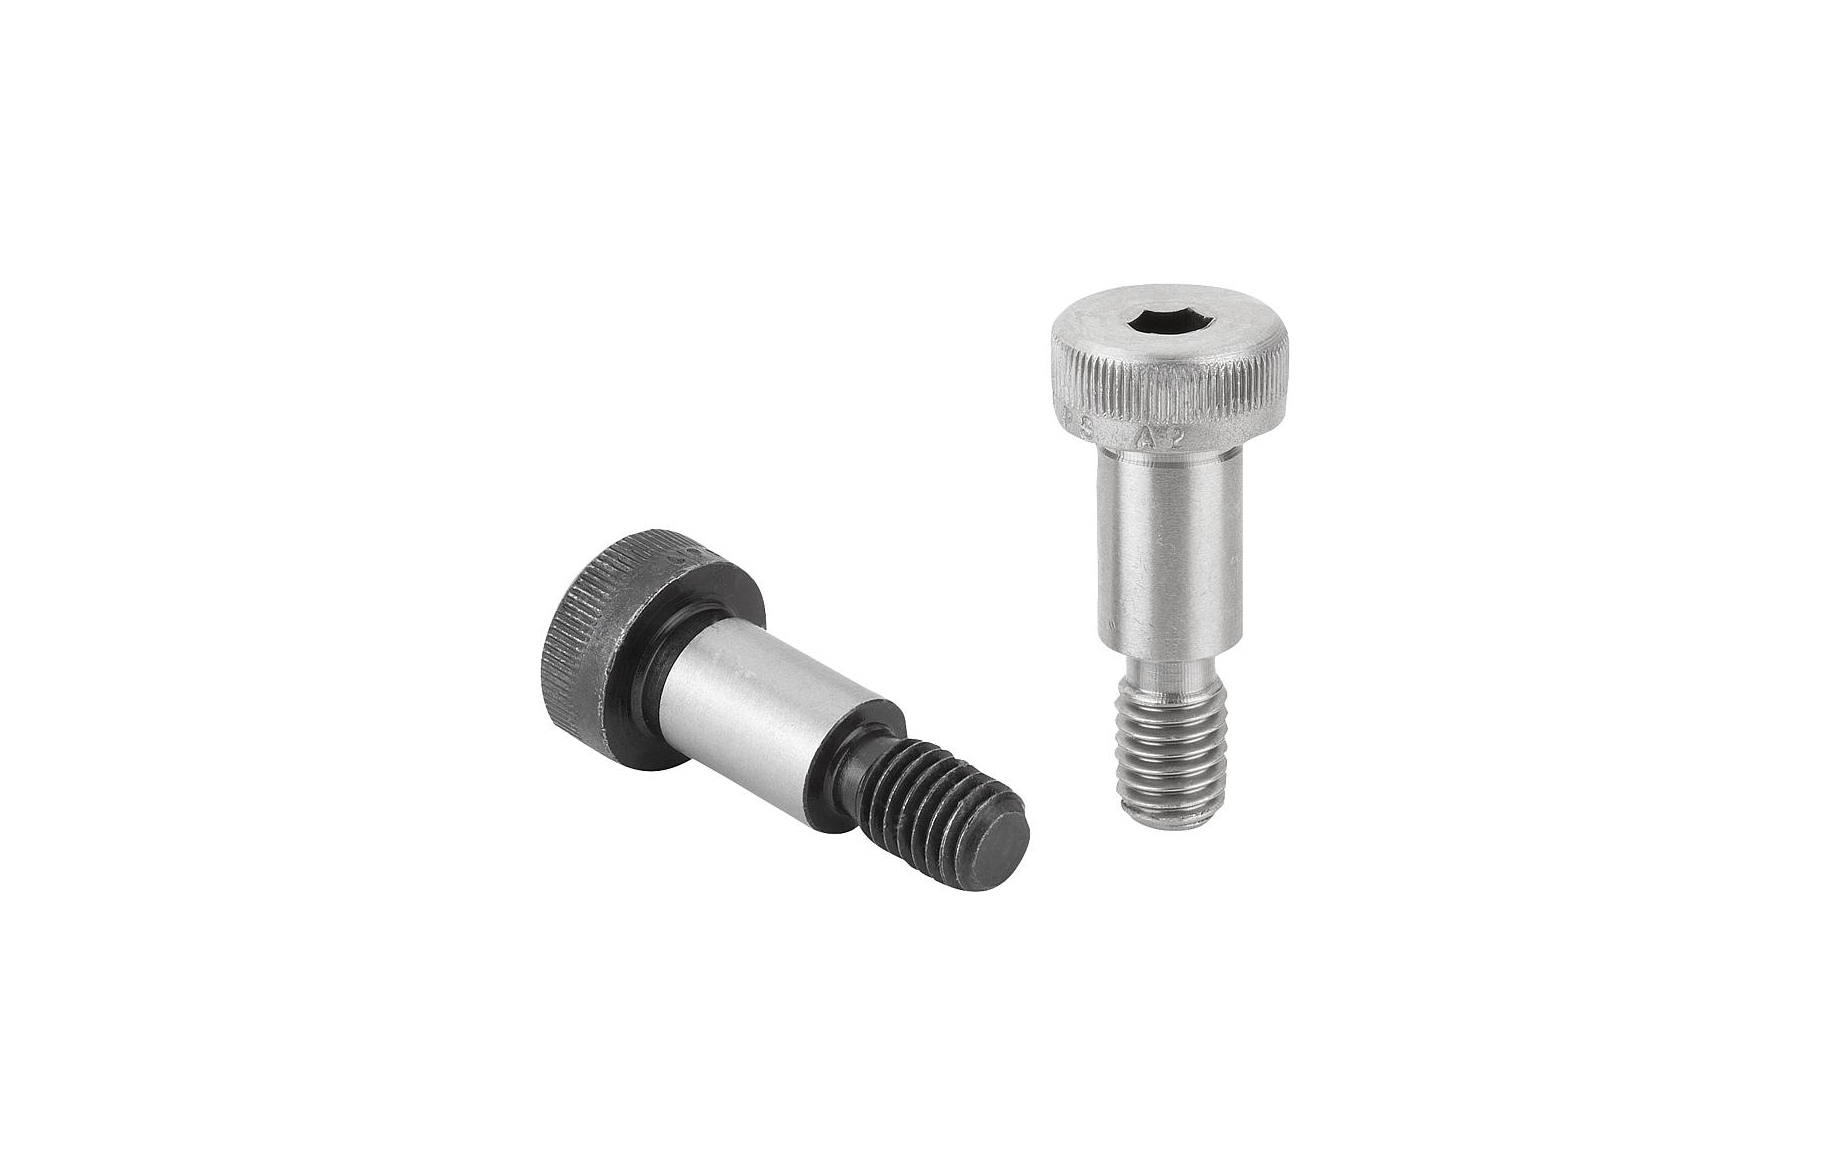 K0705 Shoulder screws similar to DIN ISO 7379